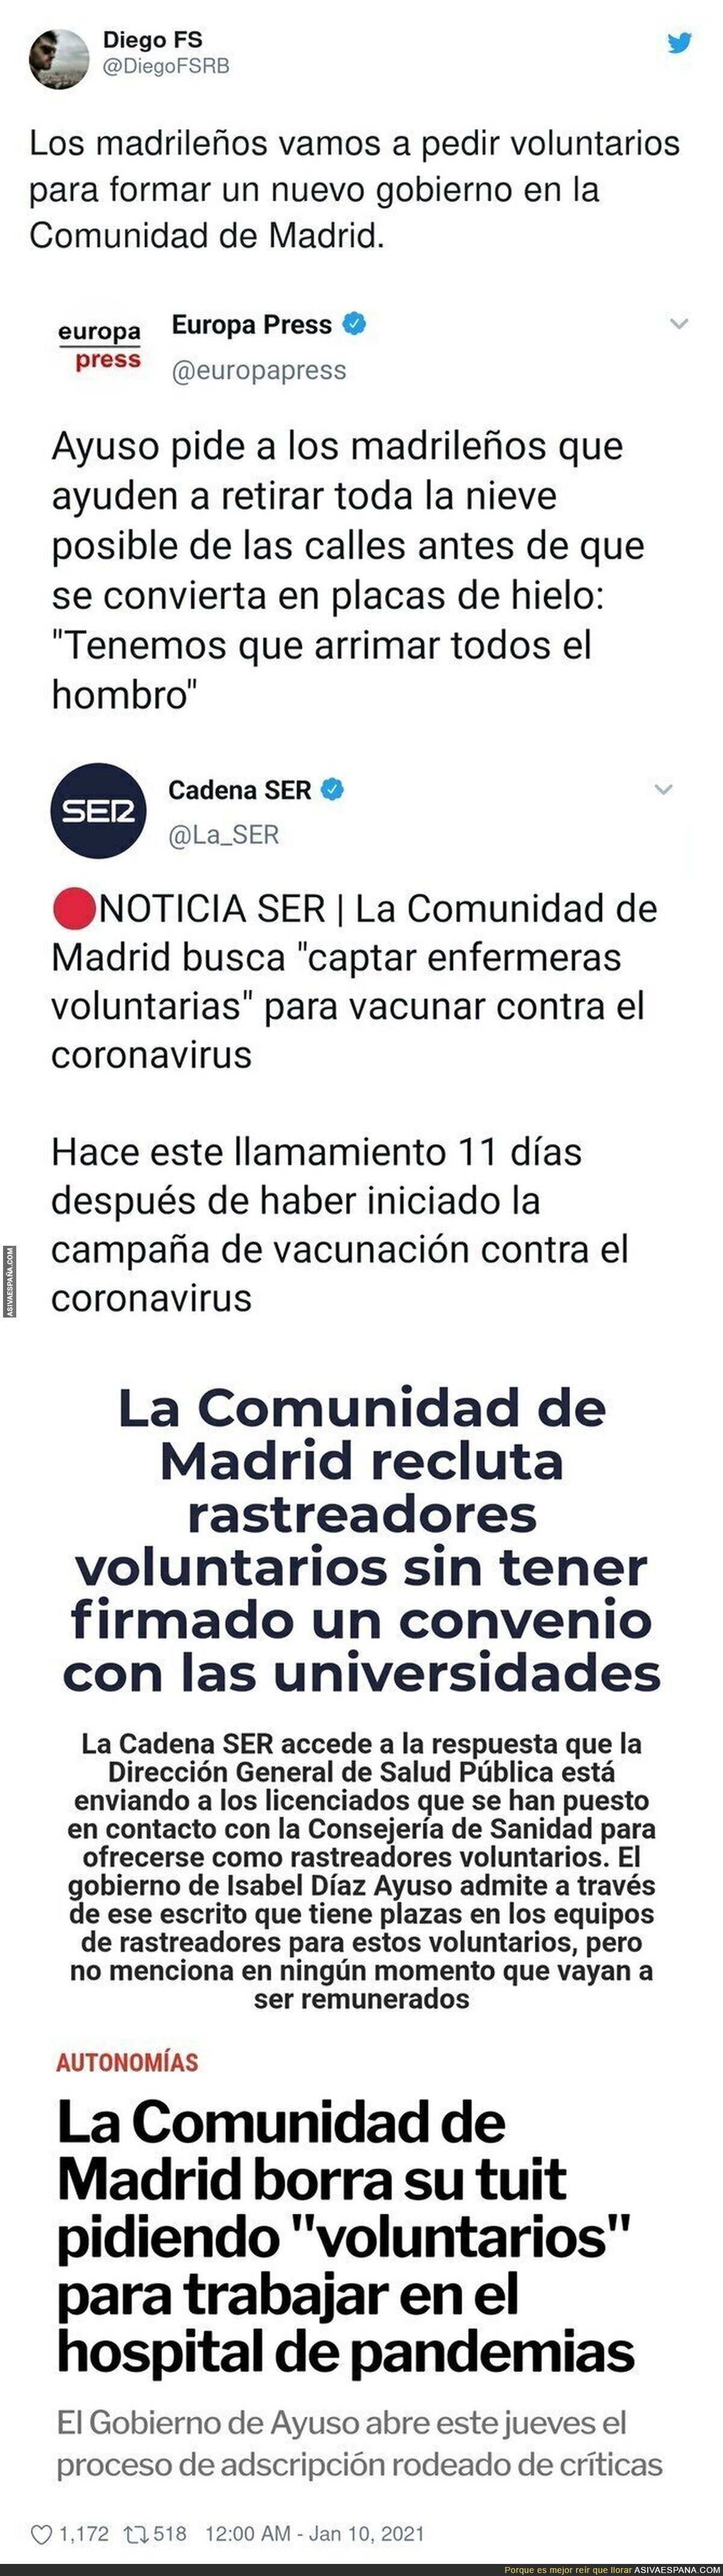 El PP busca gente que trabaje gratis en Madrid